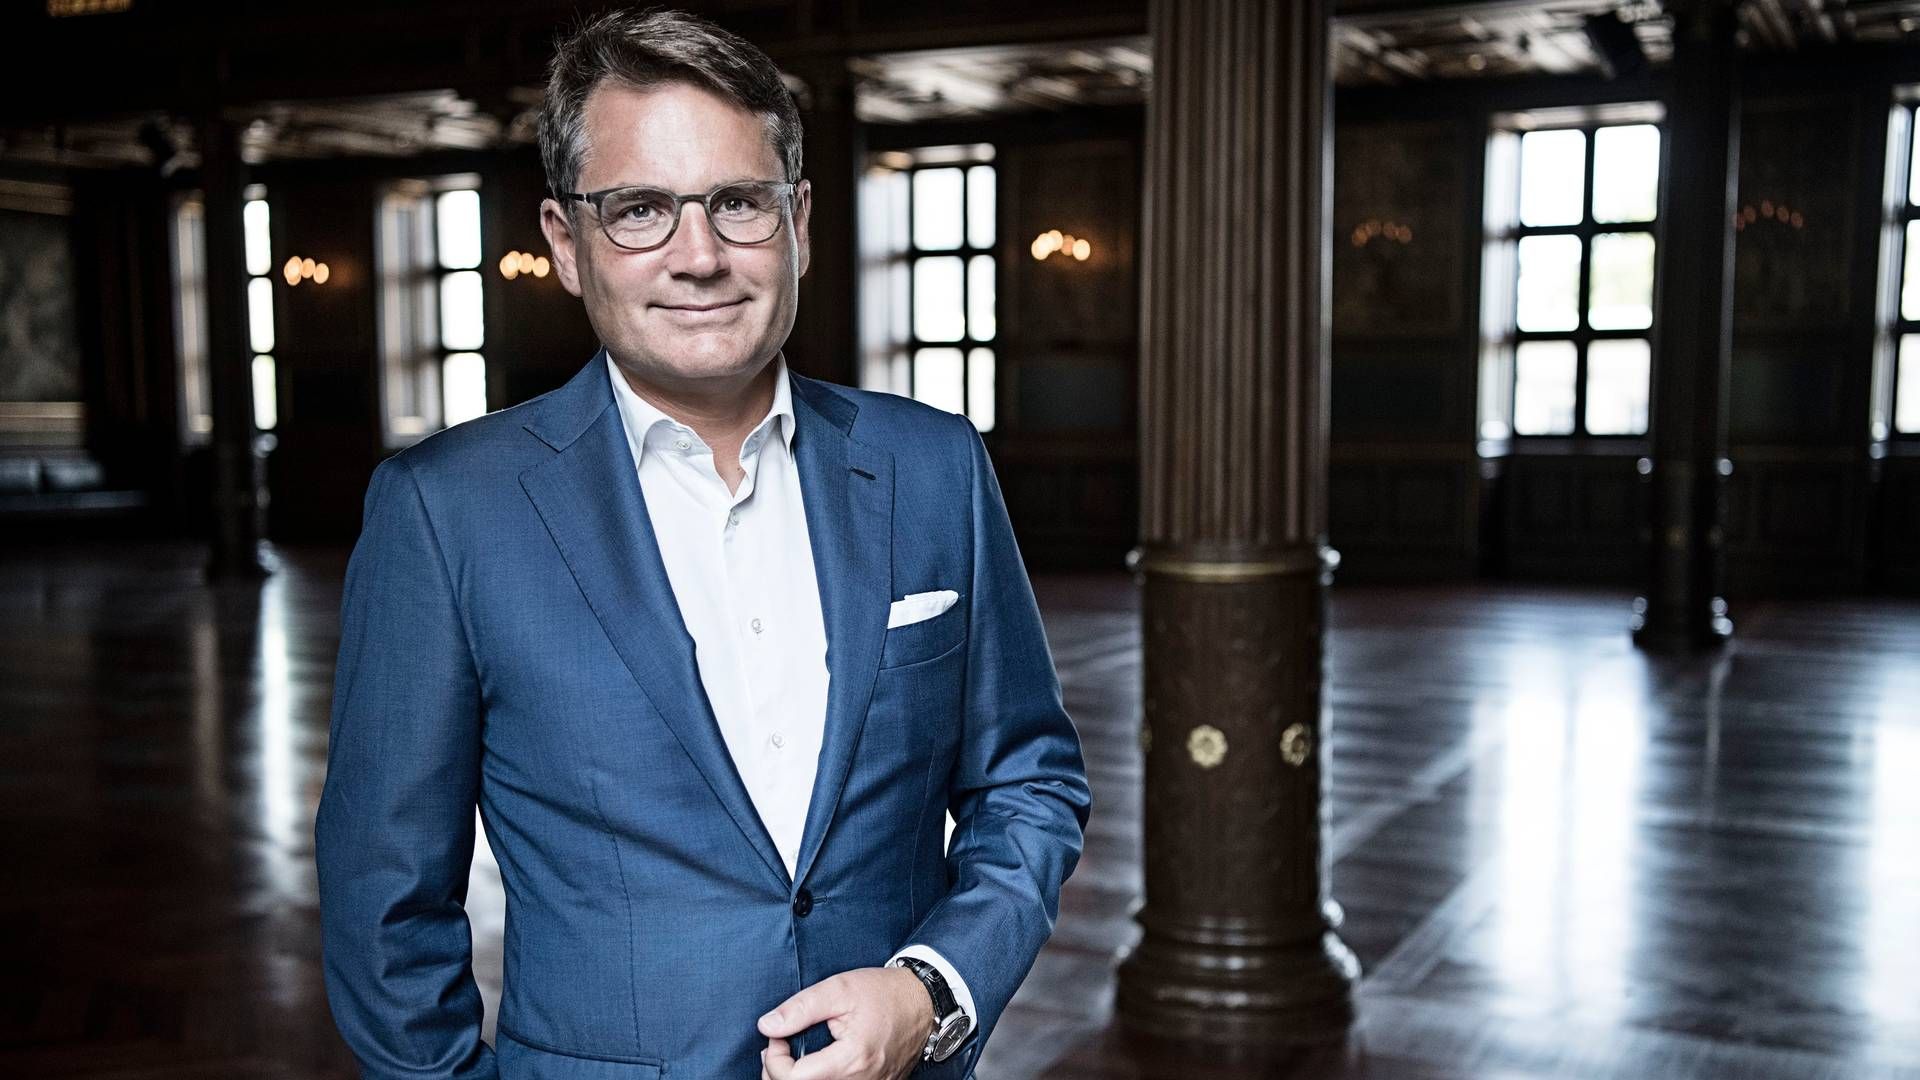 Adm. direktør i Dansk Erhverv, Brian Mikkelsen, kalder det "stærkt alarmerende." | Foto: Pr/dansk Erhverv